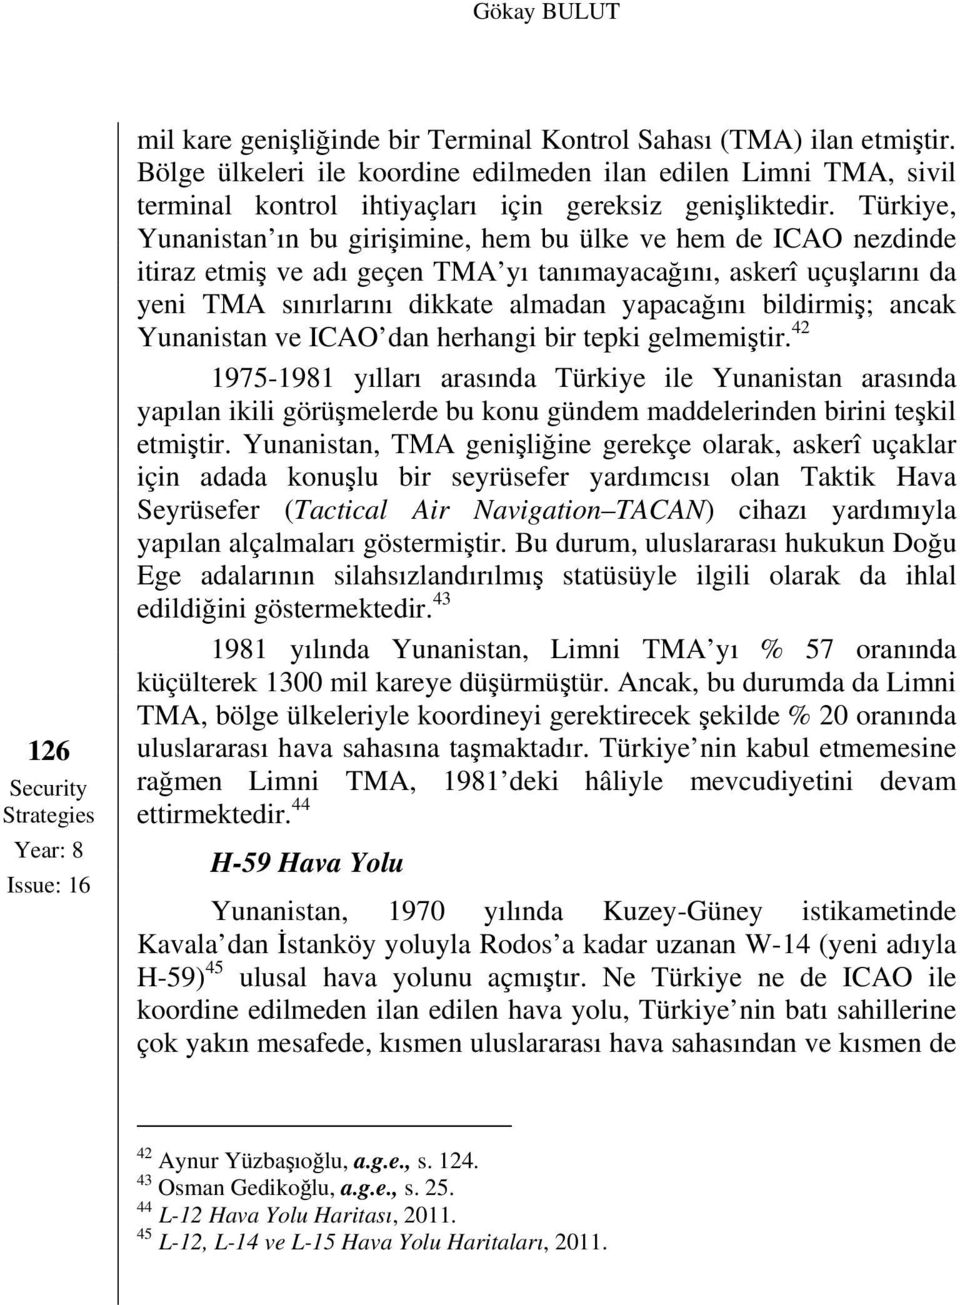 Türkiye, Yunanistan ın bu girişimine, hem bu ülke ve hem de ICAO nezdinde itiraz etmiş ve adı geçen TMA yı tanımayacağını, askerî uçuşlarını da yeni TMA sınırlarını dikkate almadan yapacağını